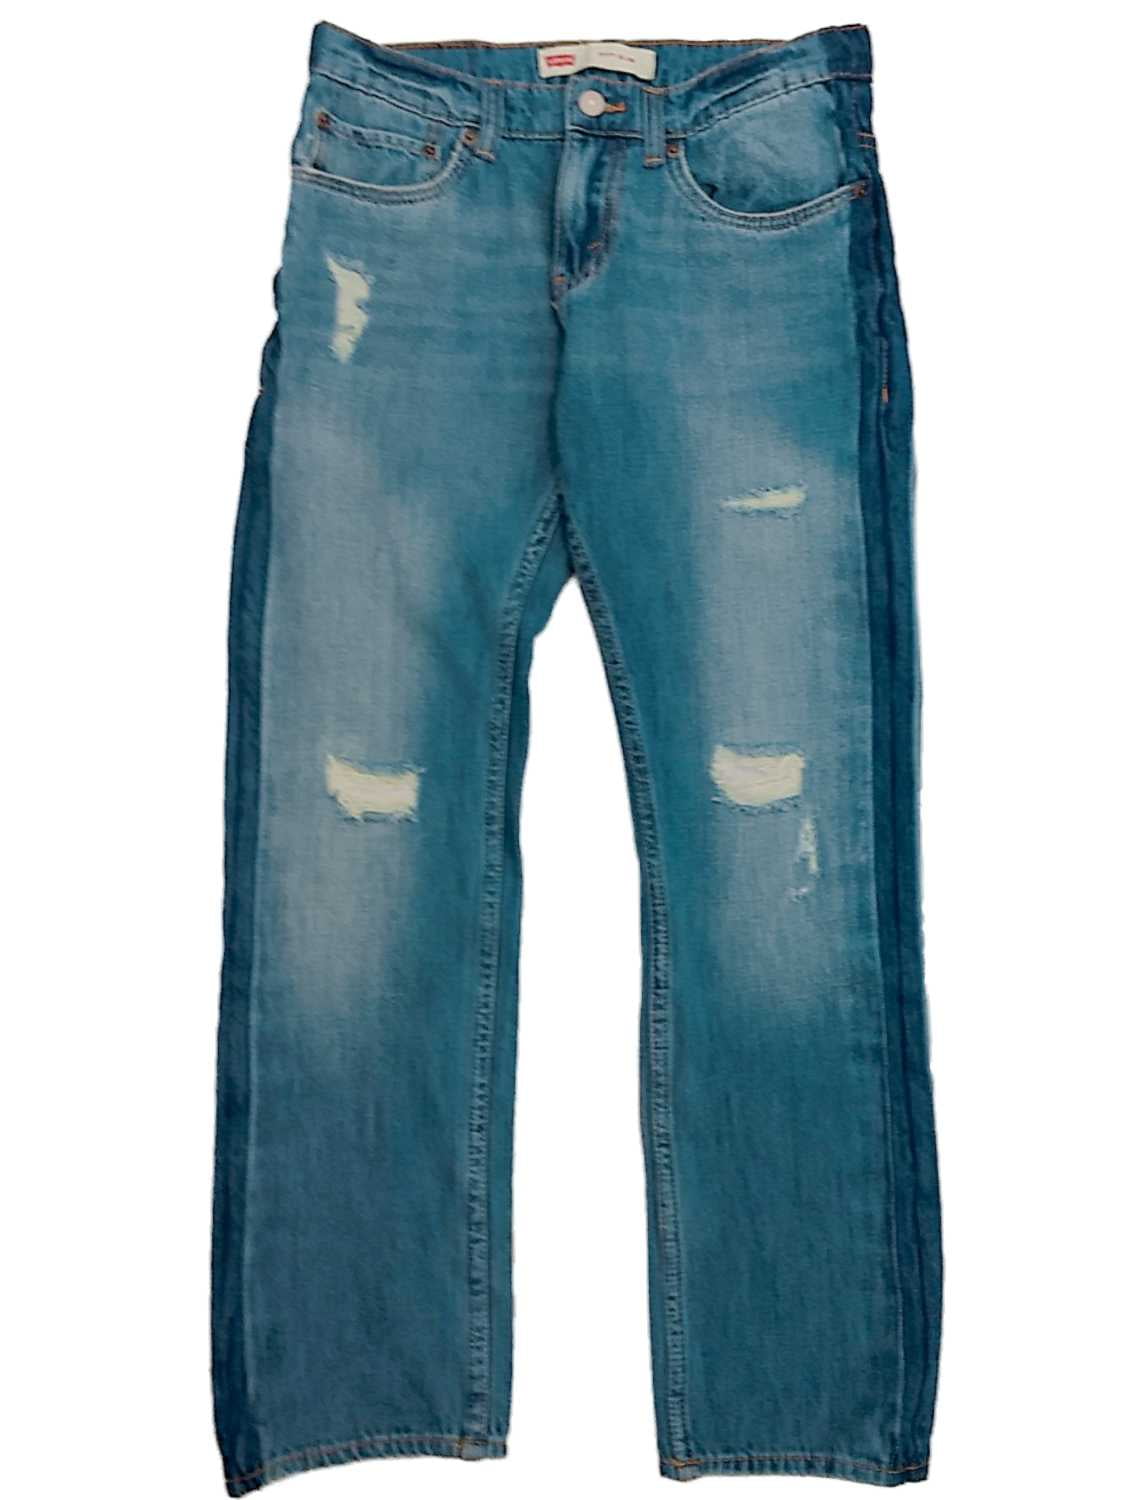 Levis 511 Slim Fit Boys Faded Distressed & Ripped Blue Denim Jeans 20 Reg  30X30 